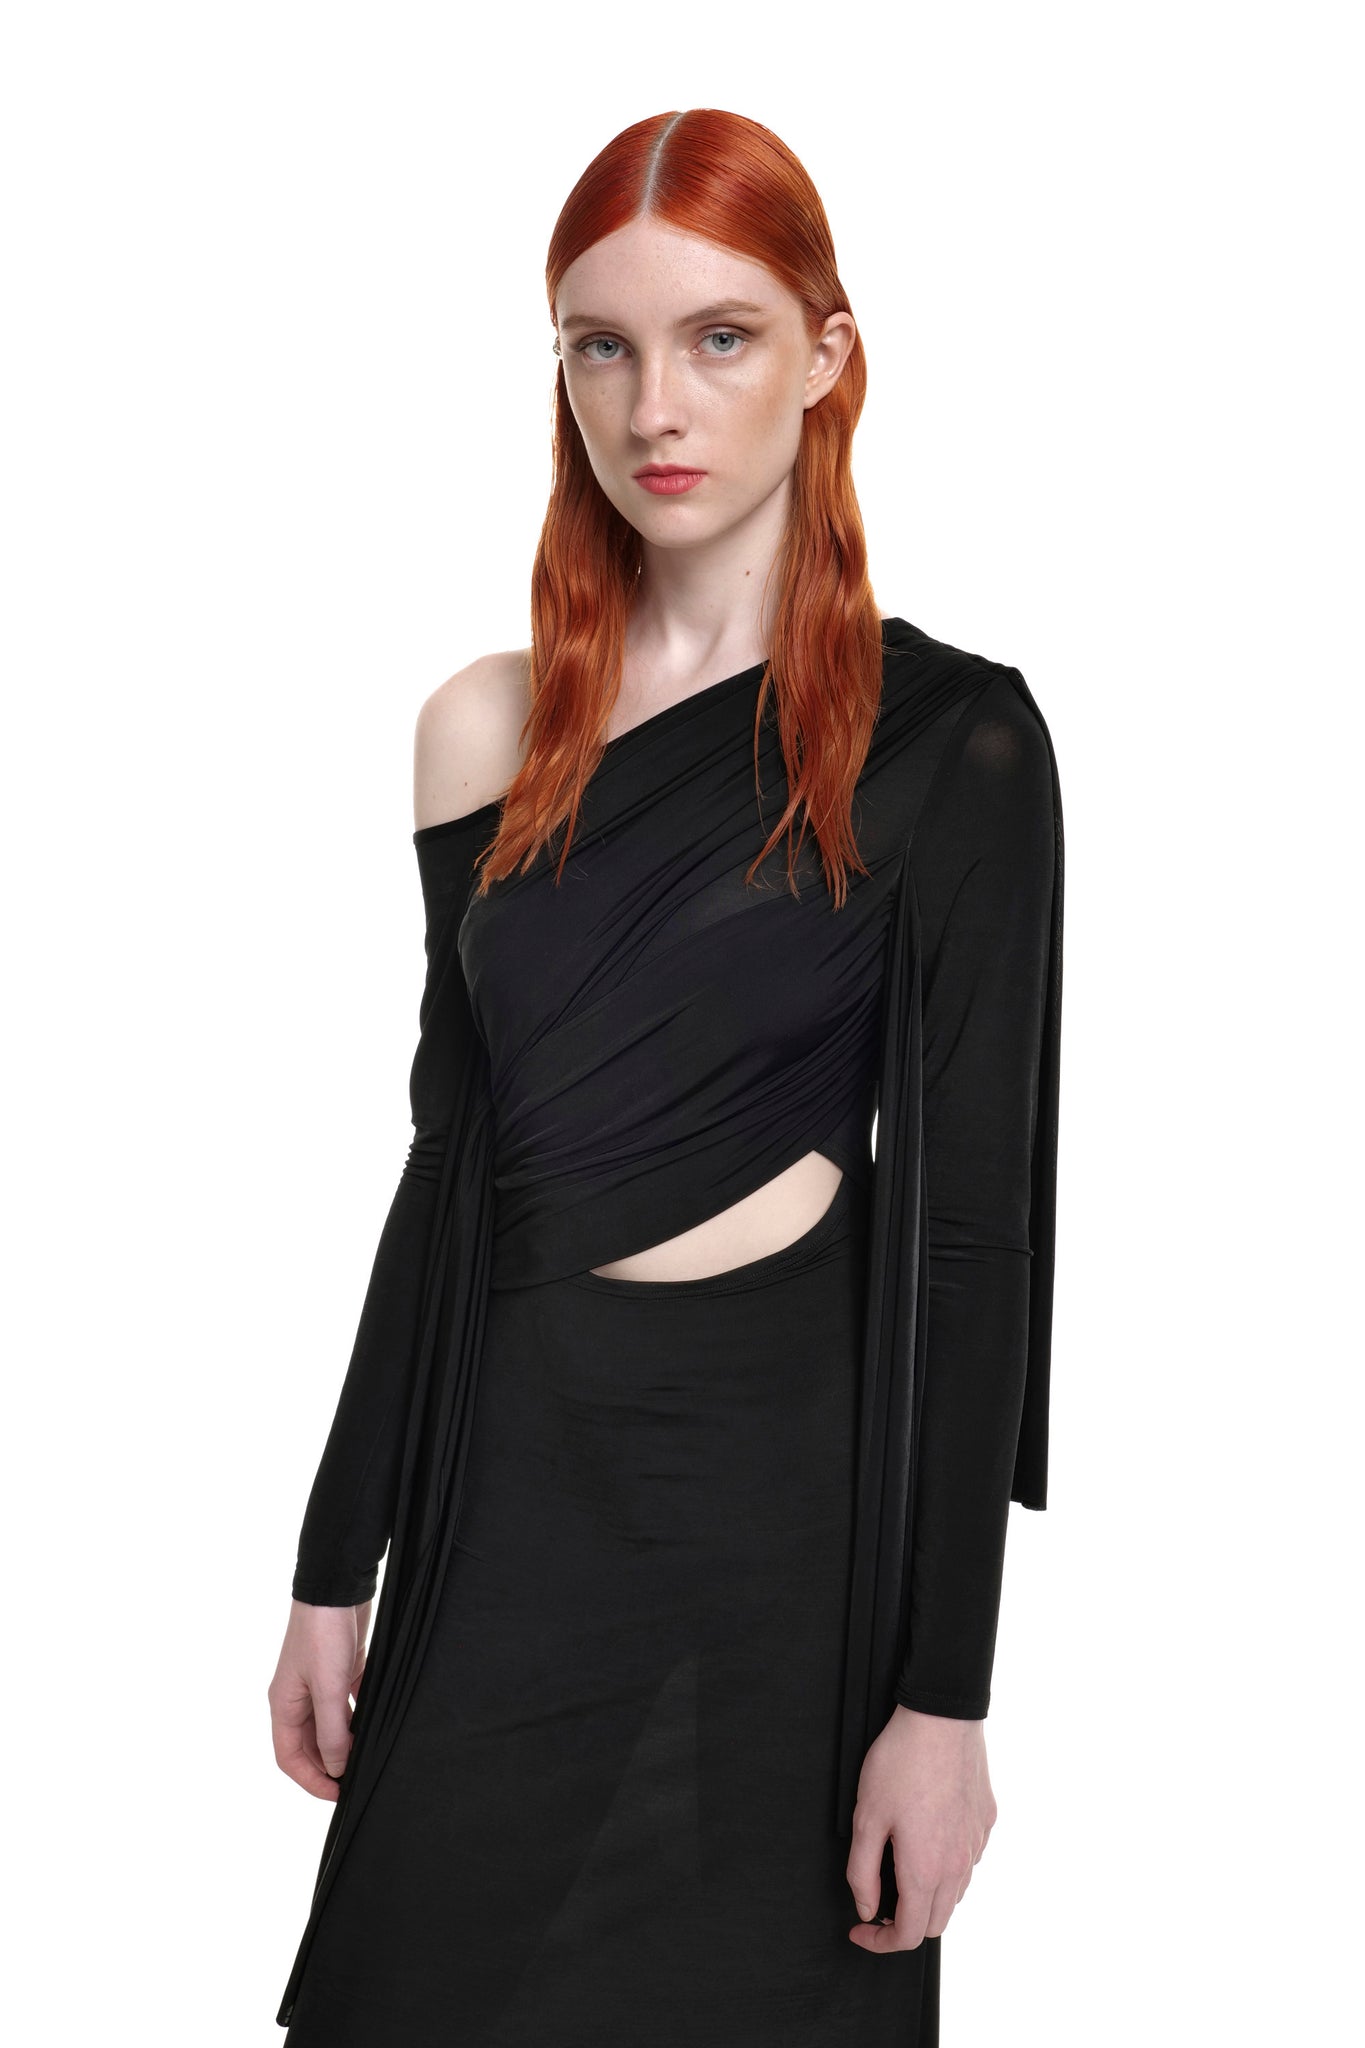 Black draped maxi dress